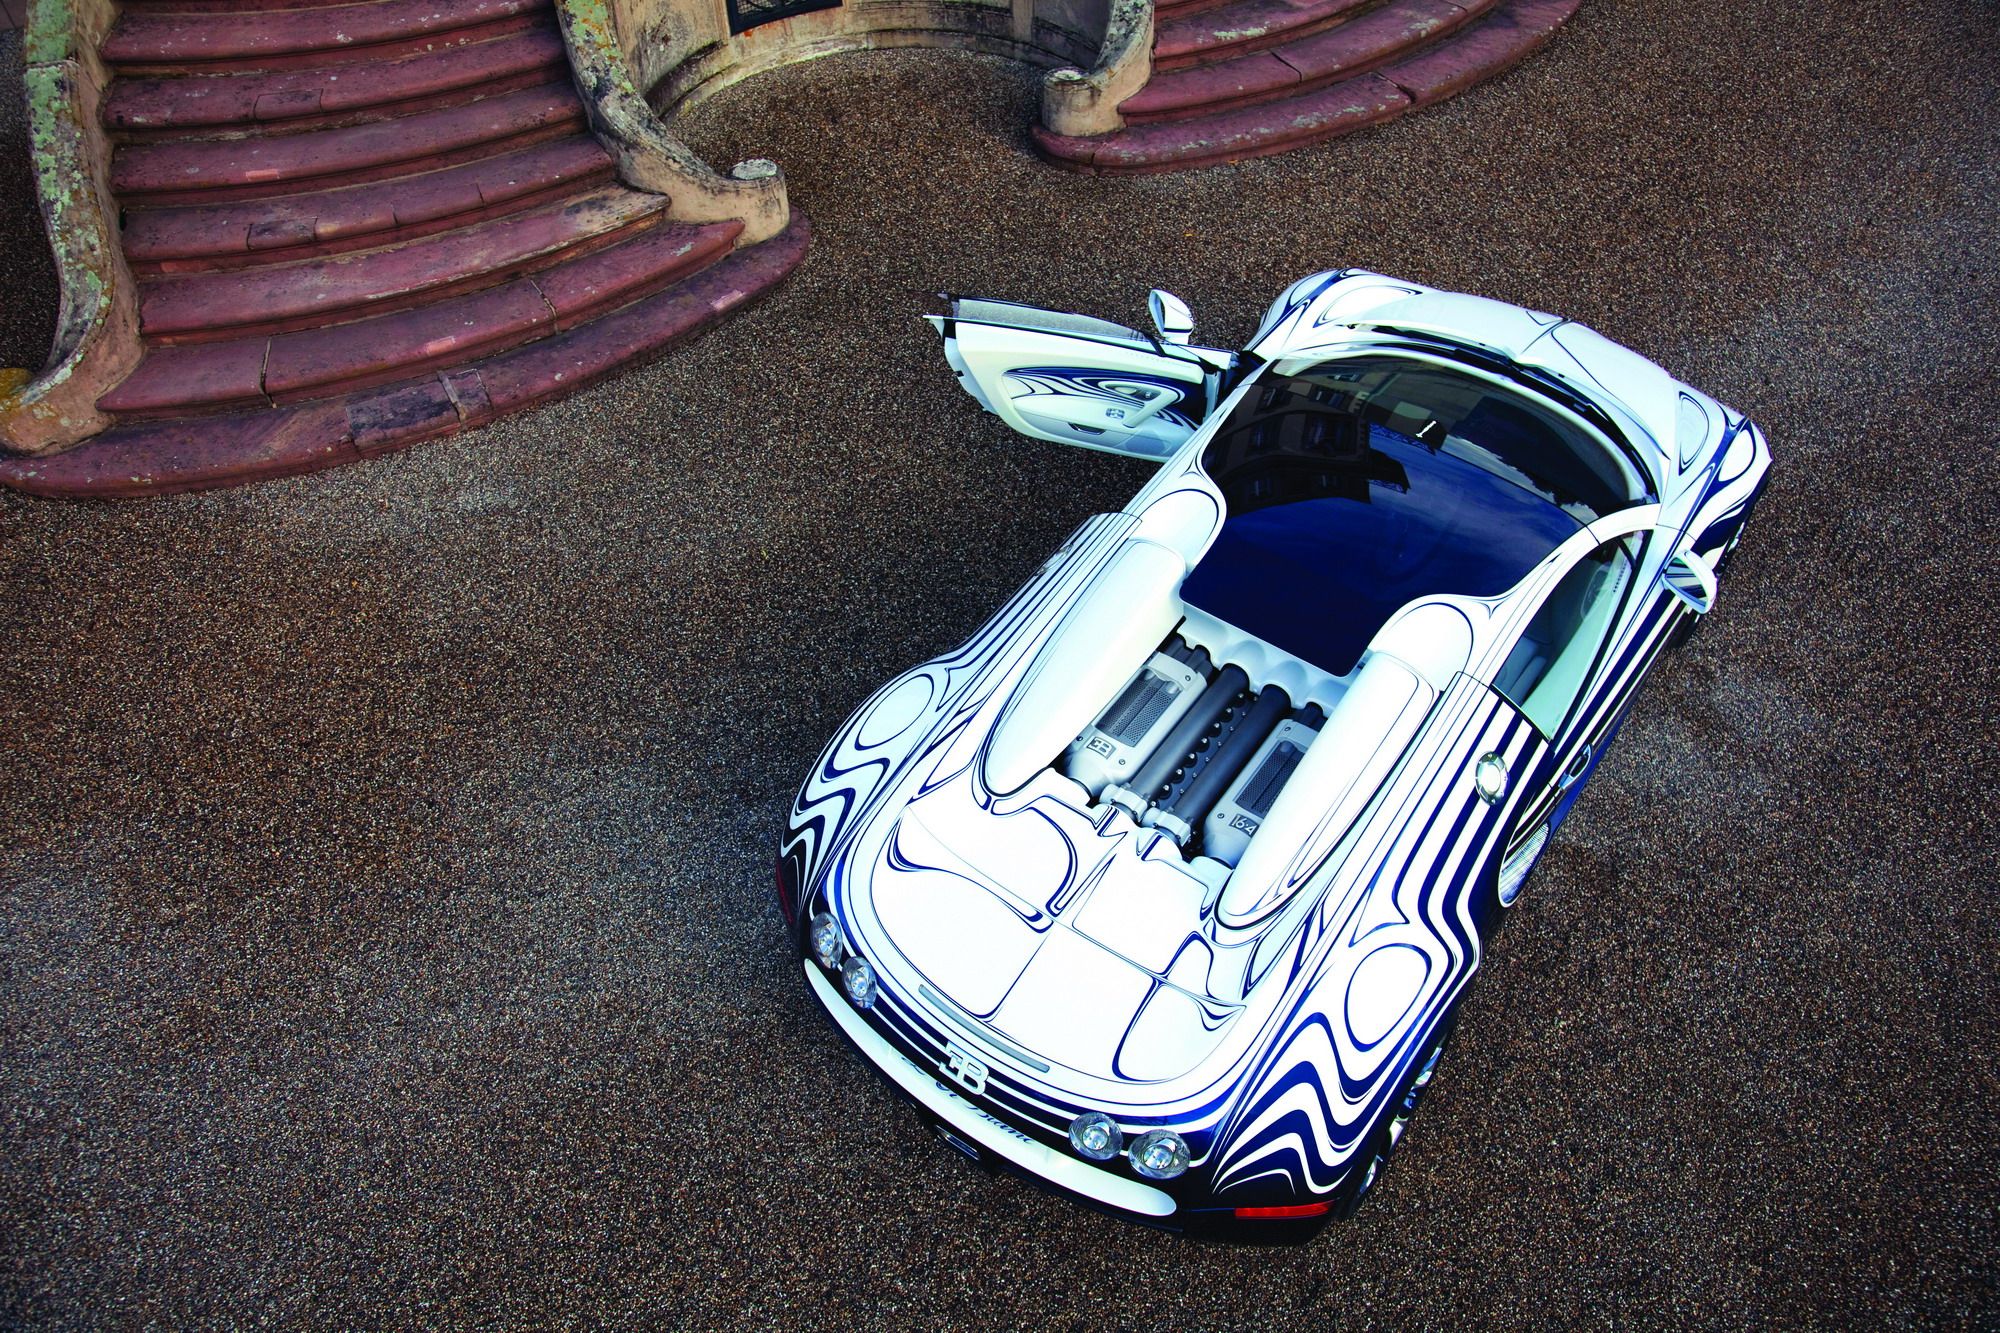 2011 Bugatti Veyron L'or Blanc 